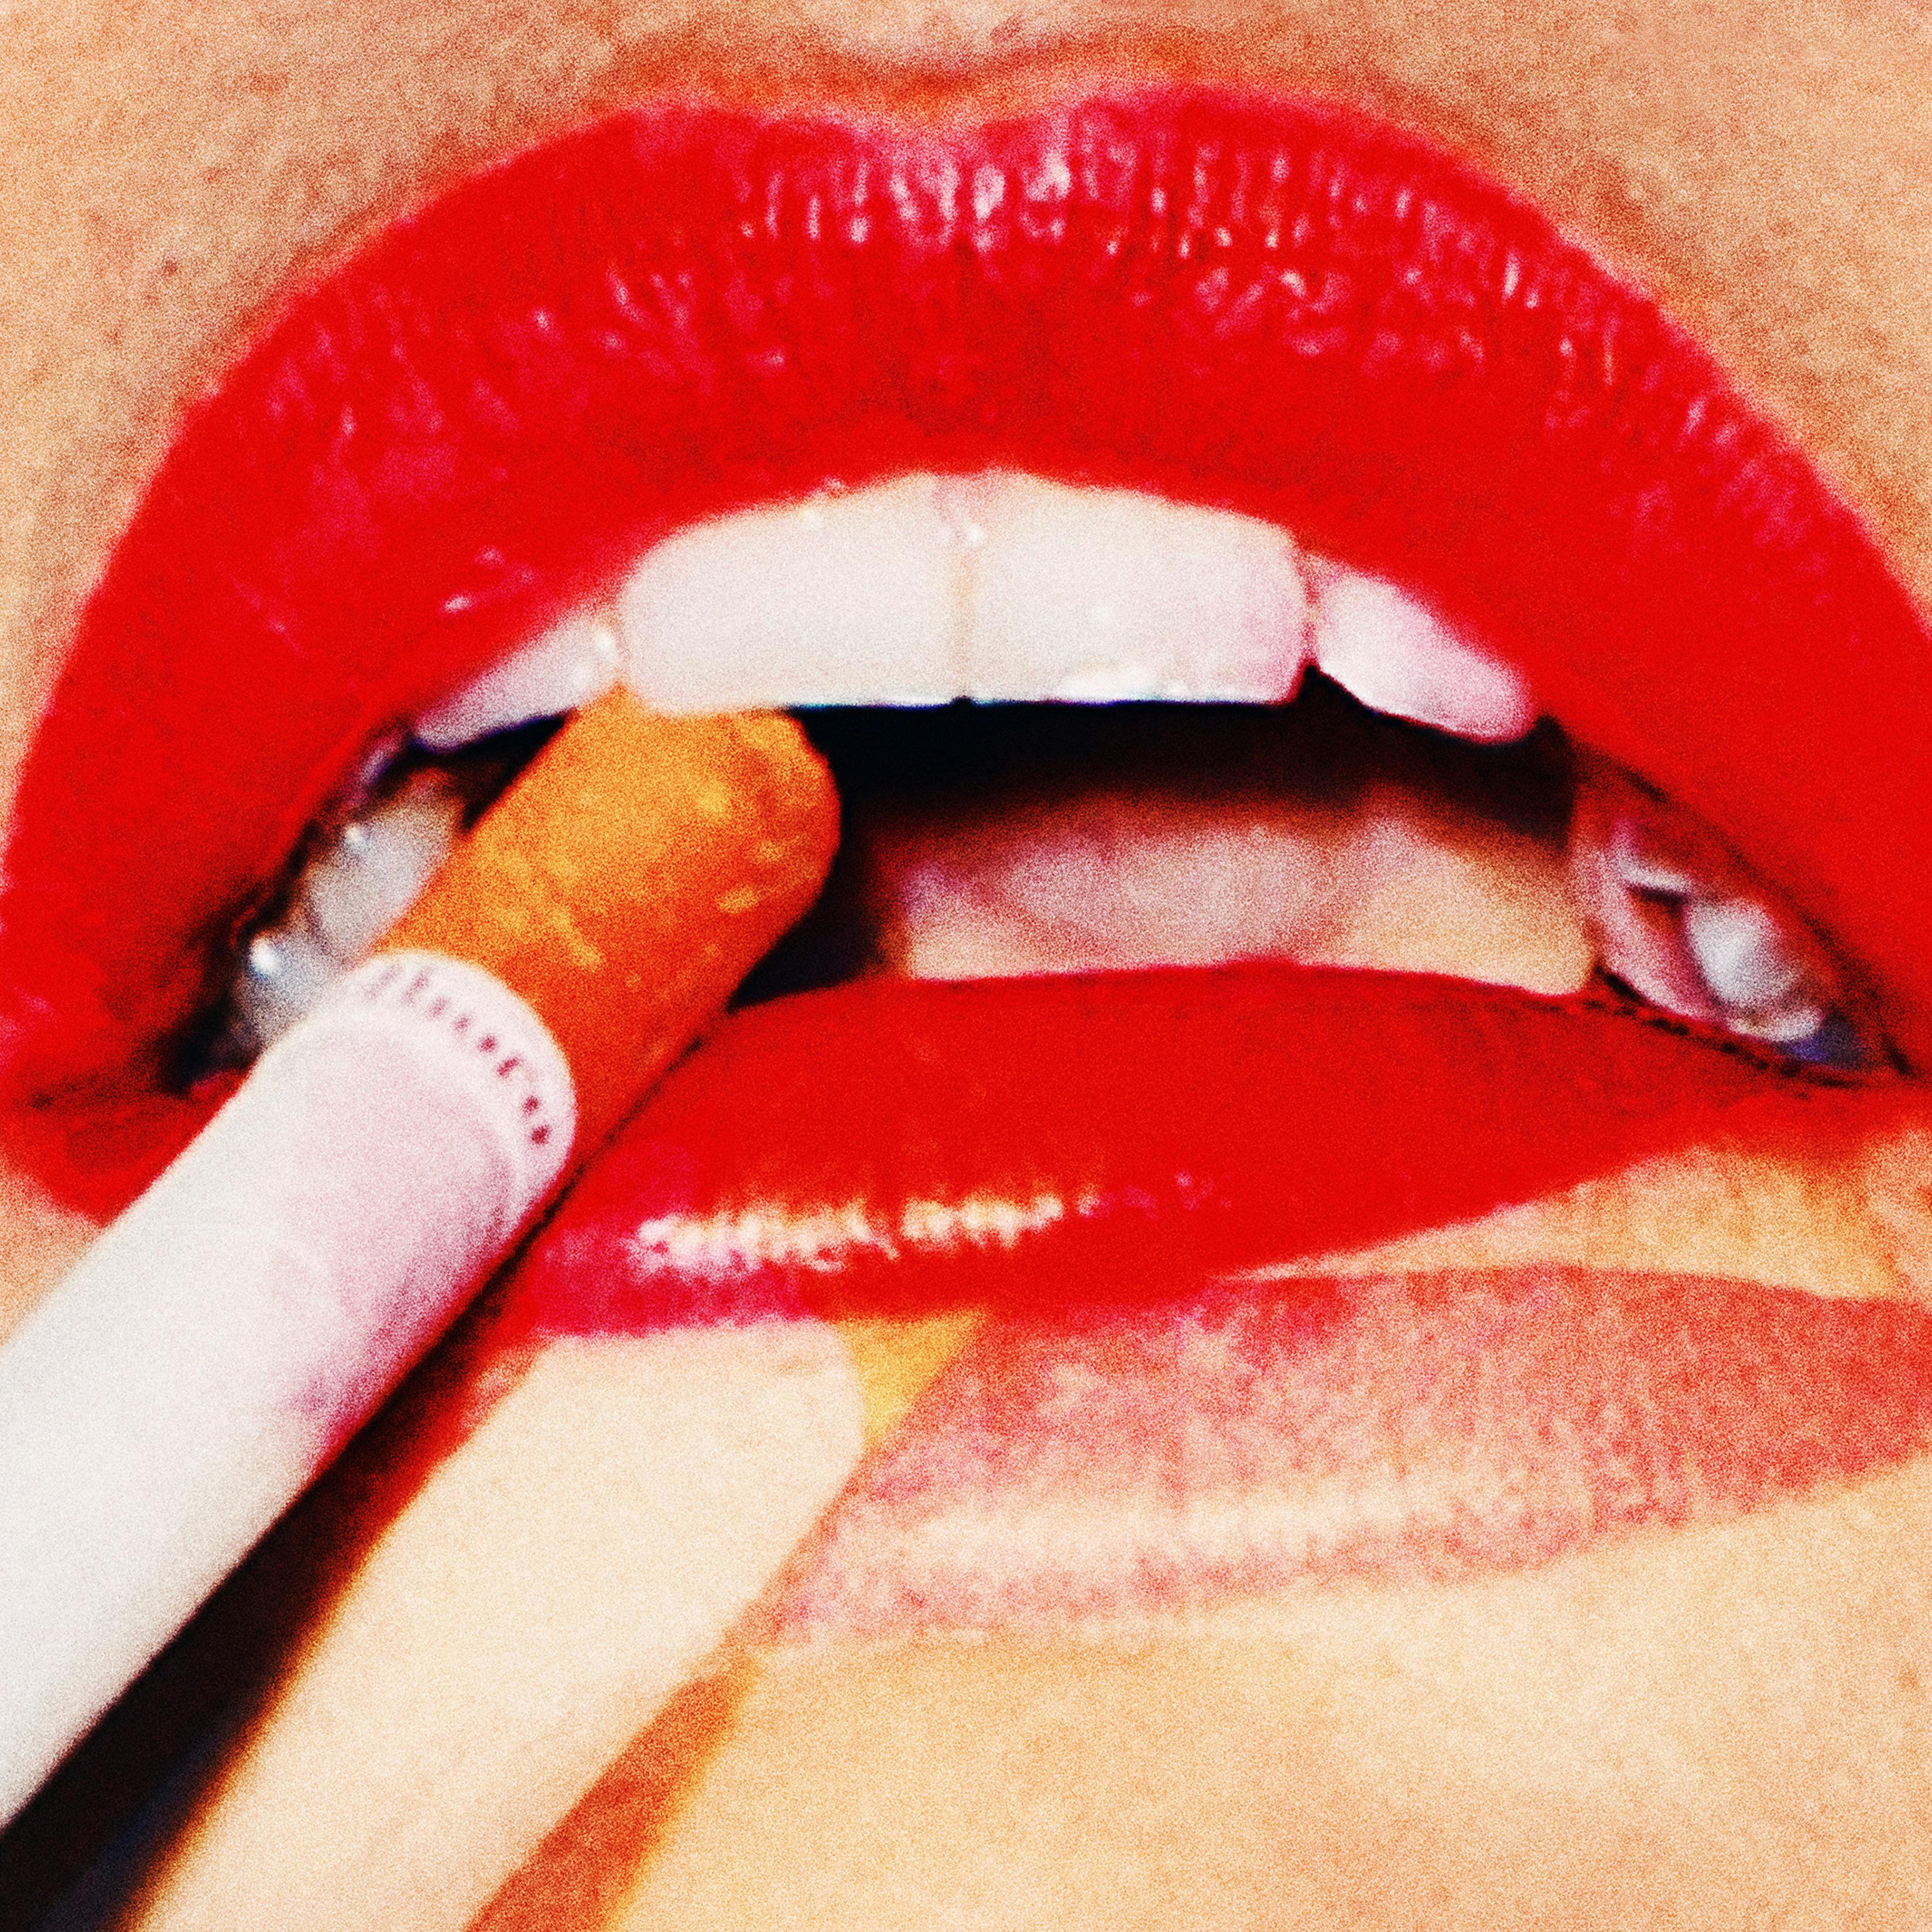 "The Lips" Fotografie 24" x 24"  Auflage von 15 Stück von Larsen Sotelo